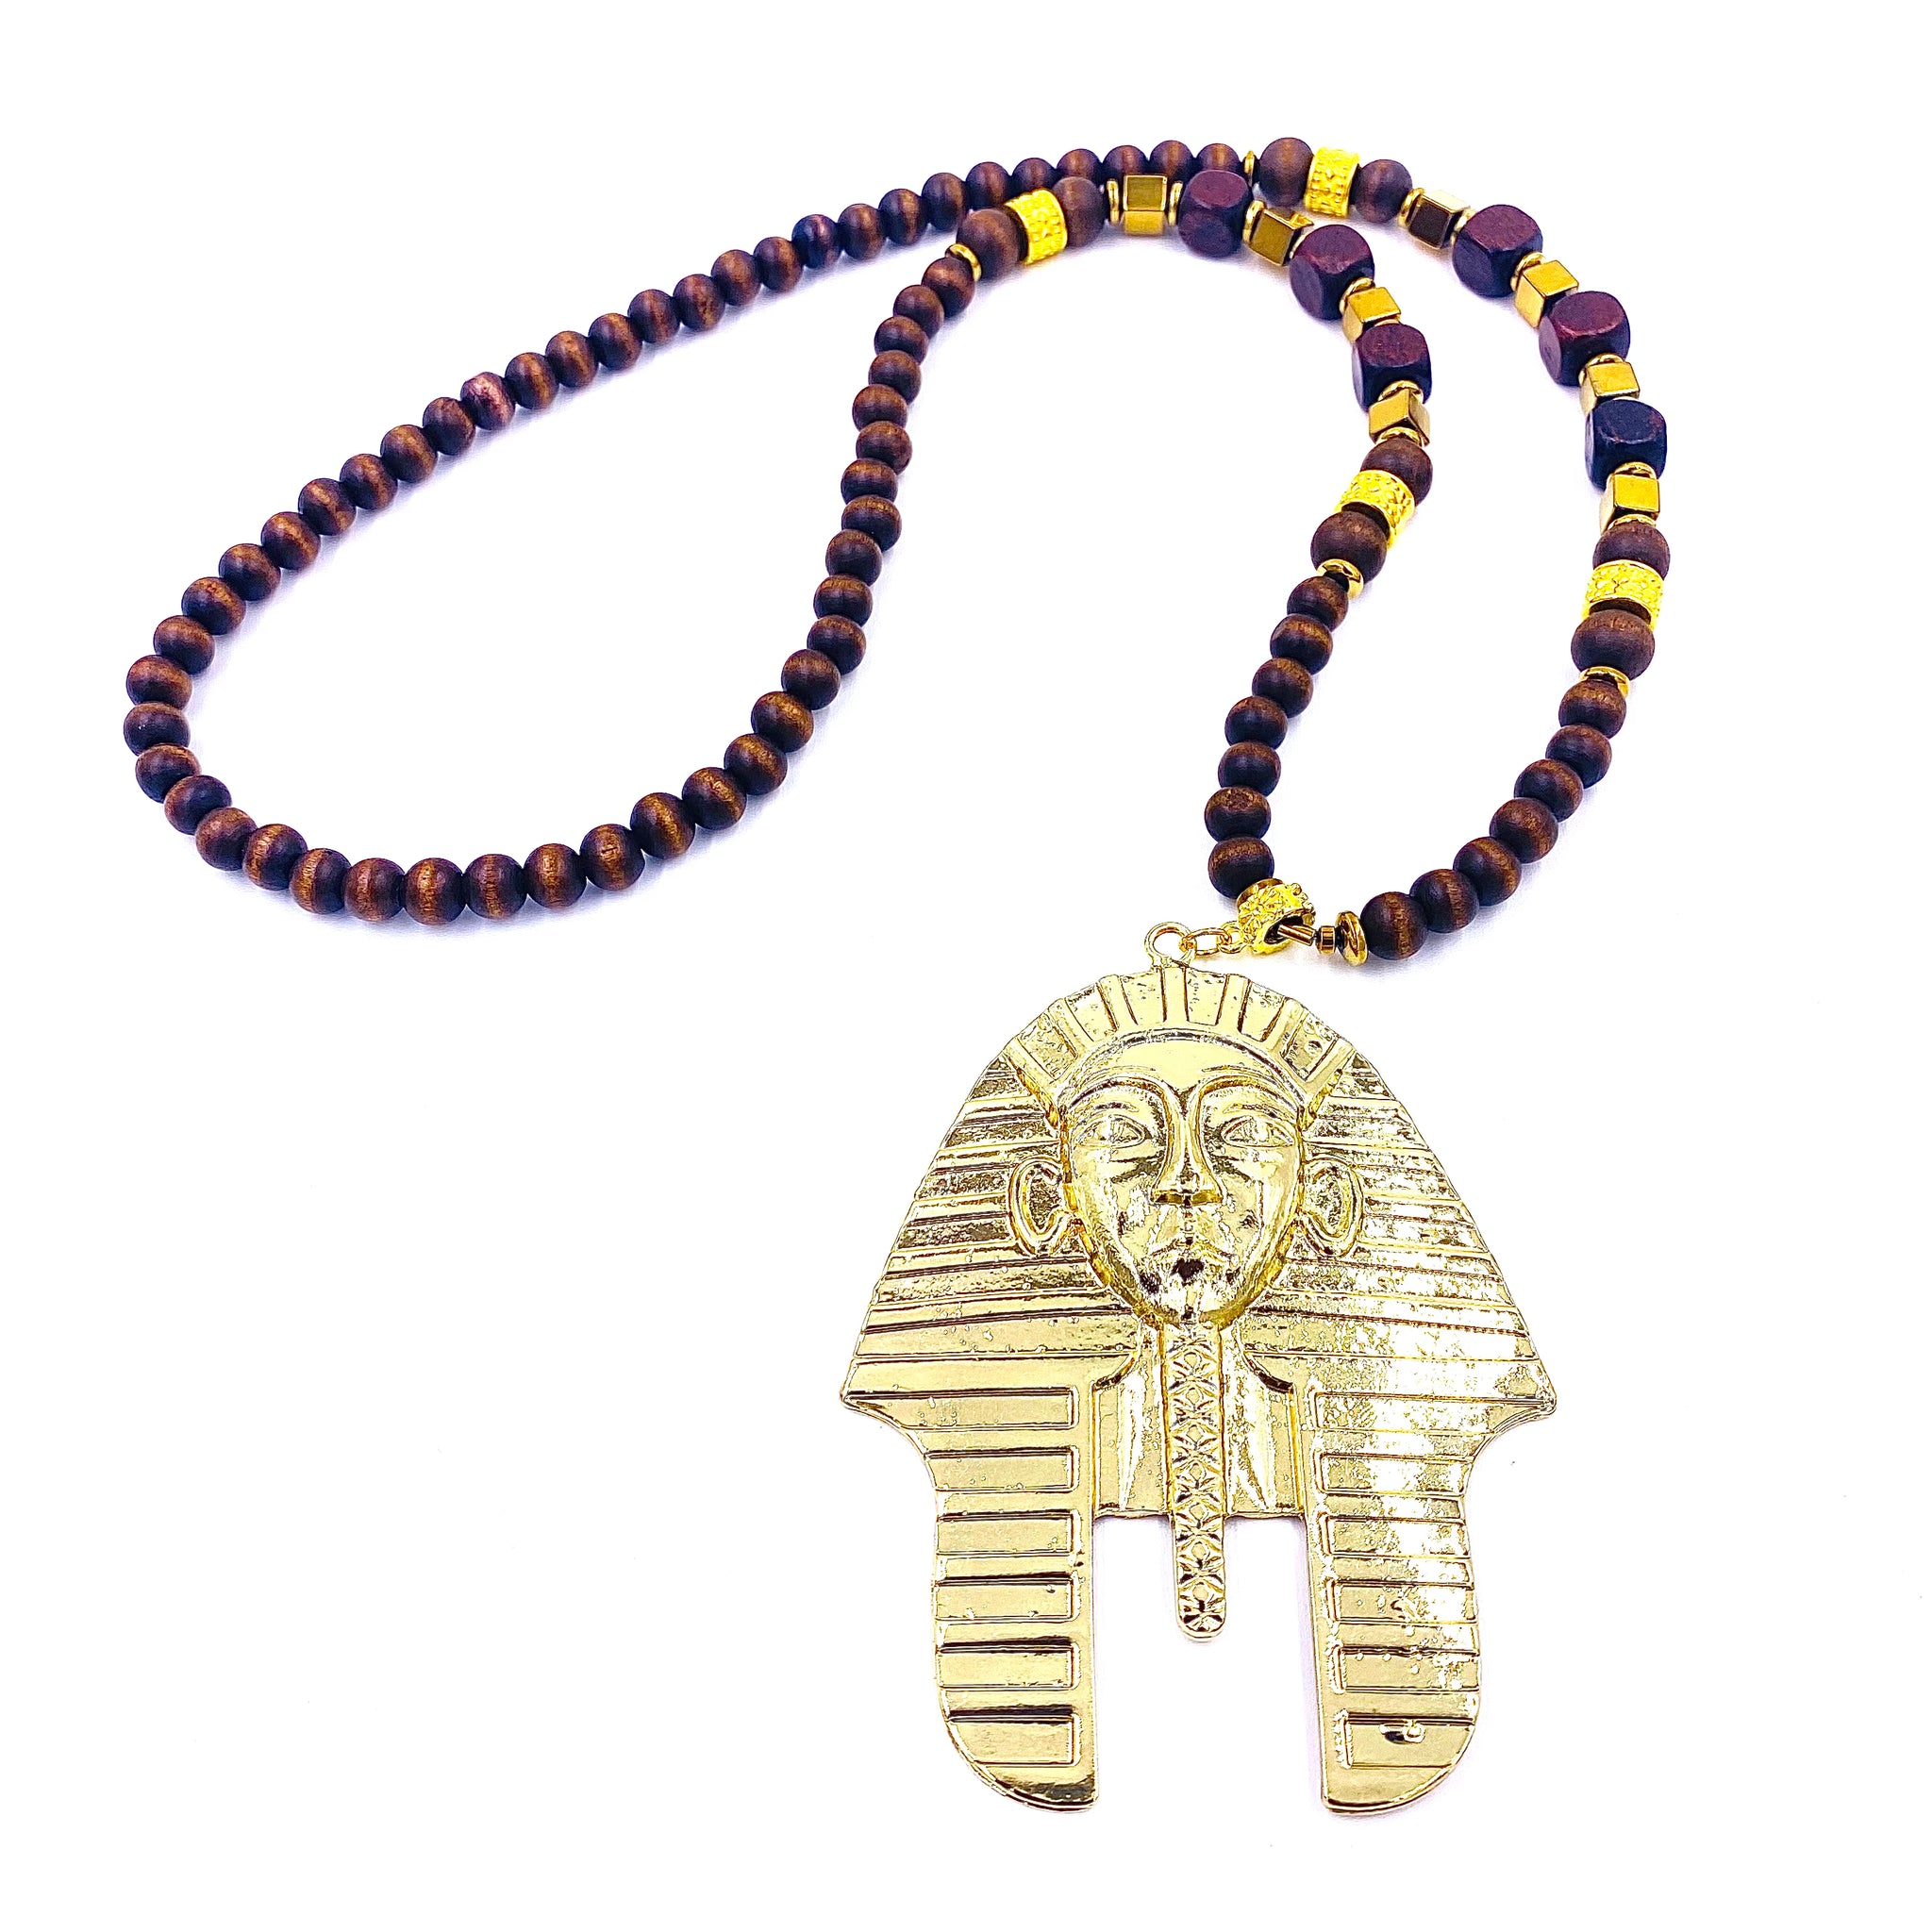 Pharaoh Necklace w/ Ebony Wood Beads & Gold Hematite